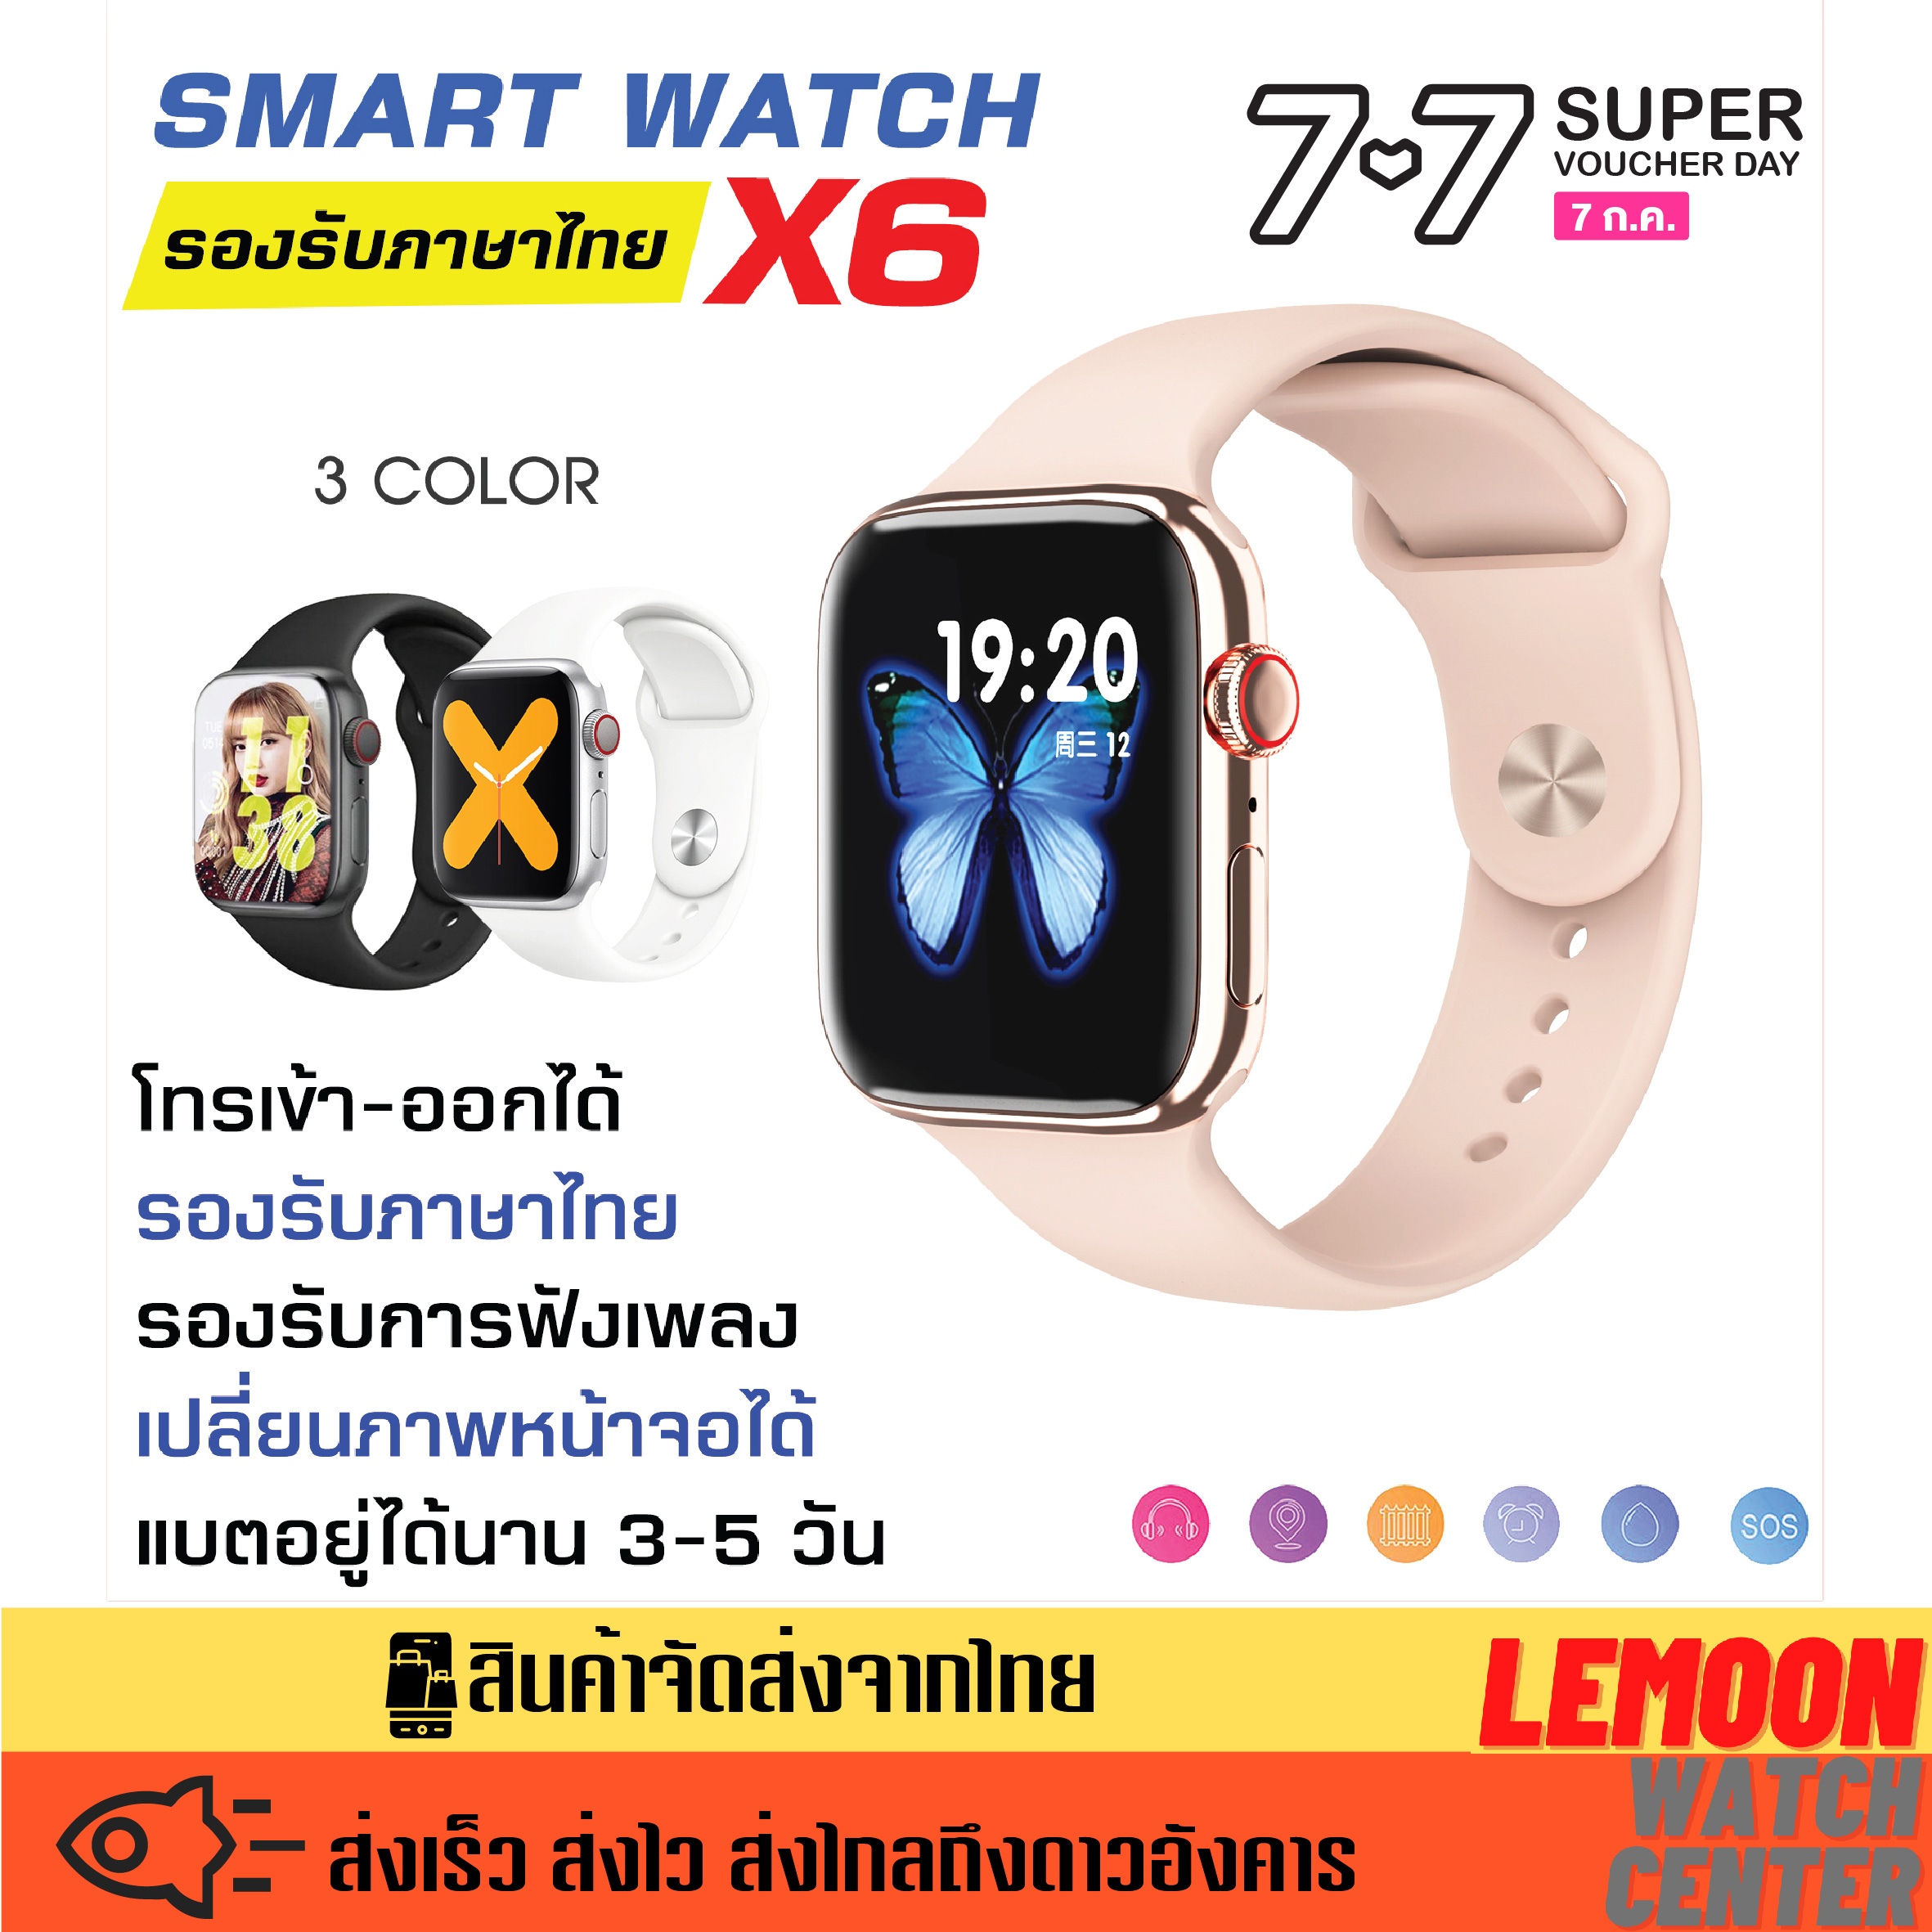 【ส่งจากประเทศไทย】smart watch x7 pro max / x6 นาฬิกาสมาทวอช2021 นาฟิกาโทรศัพท์ นาฟิกาสมาทวอท นาฟิกาข้อมือ เมนูภาษาไทย เปลี่ยนหน้าจอได้ โทรได้ แจ้งเตือนข้อความ ของแท้100% มีบริการเก็บเงินปลายทาง